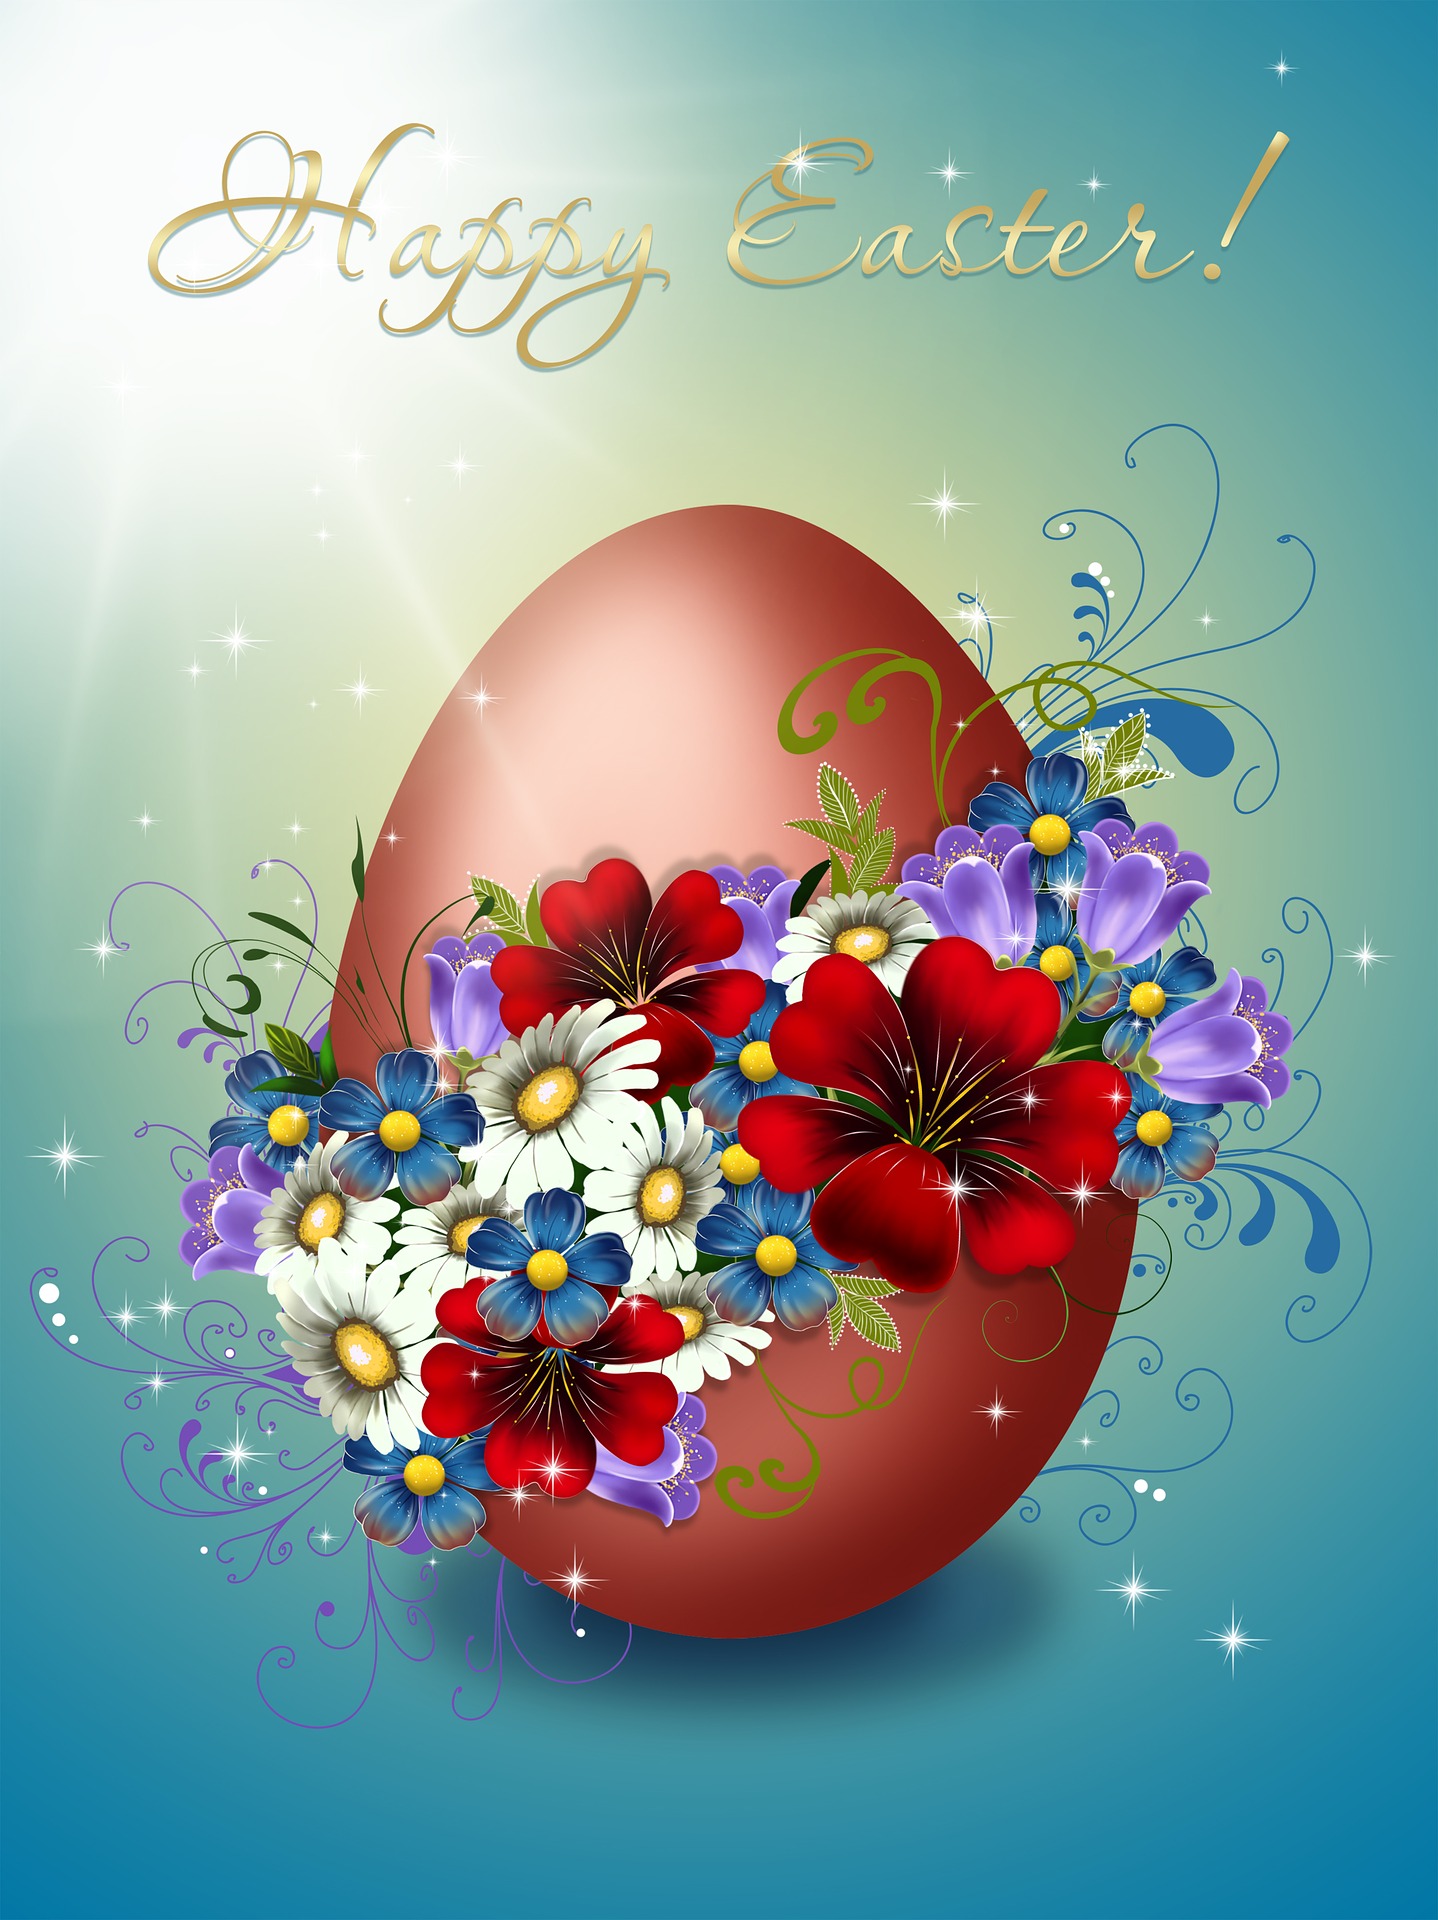 Jajko w kolorze bordowym ozdobione wieloma kwiatami na jasnoniebieskim tle